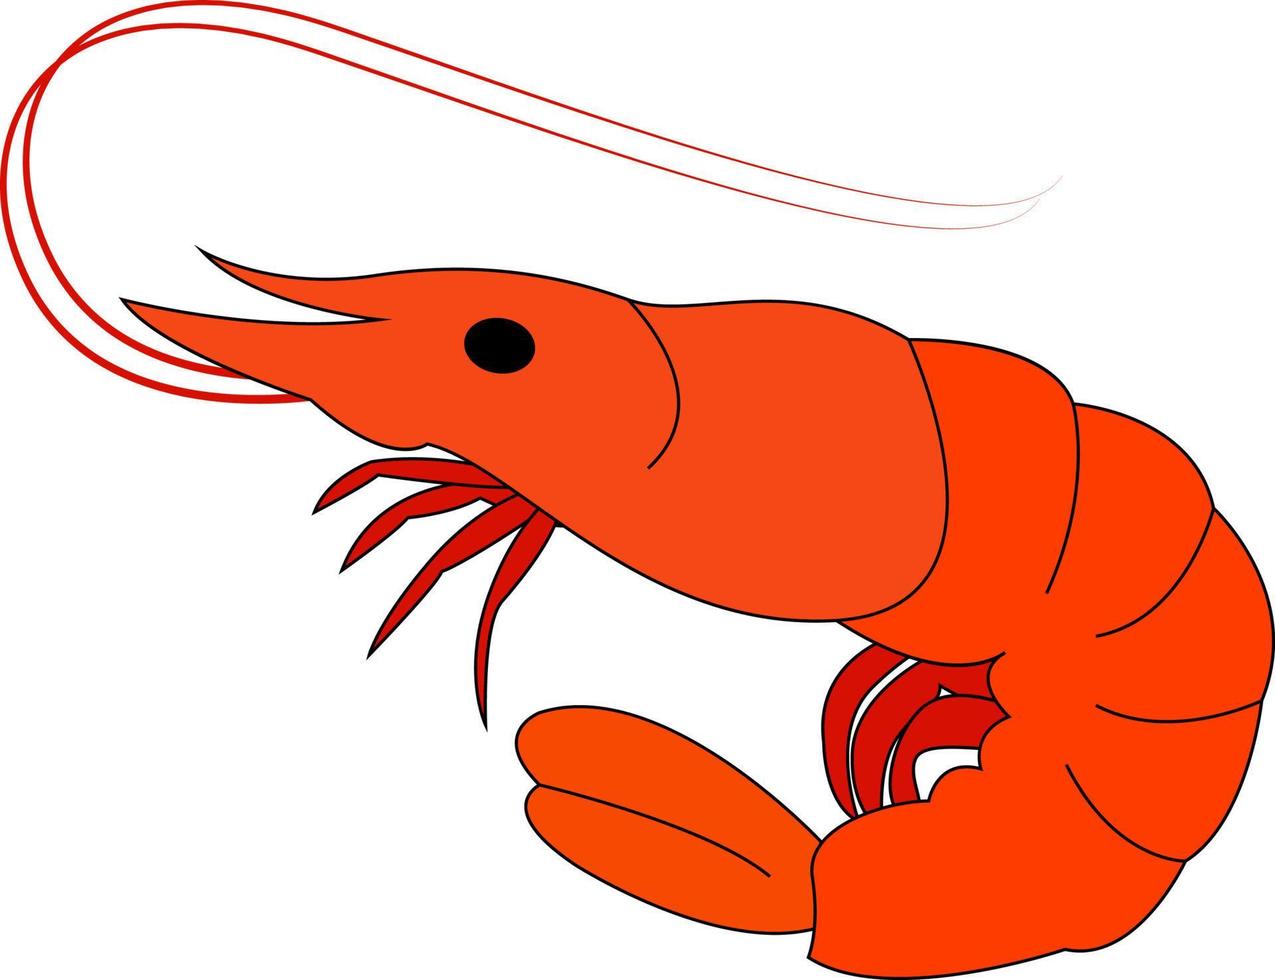 Little shrimp, illustration, vector on white background.